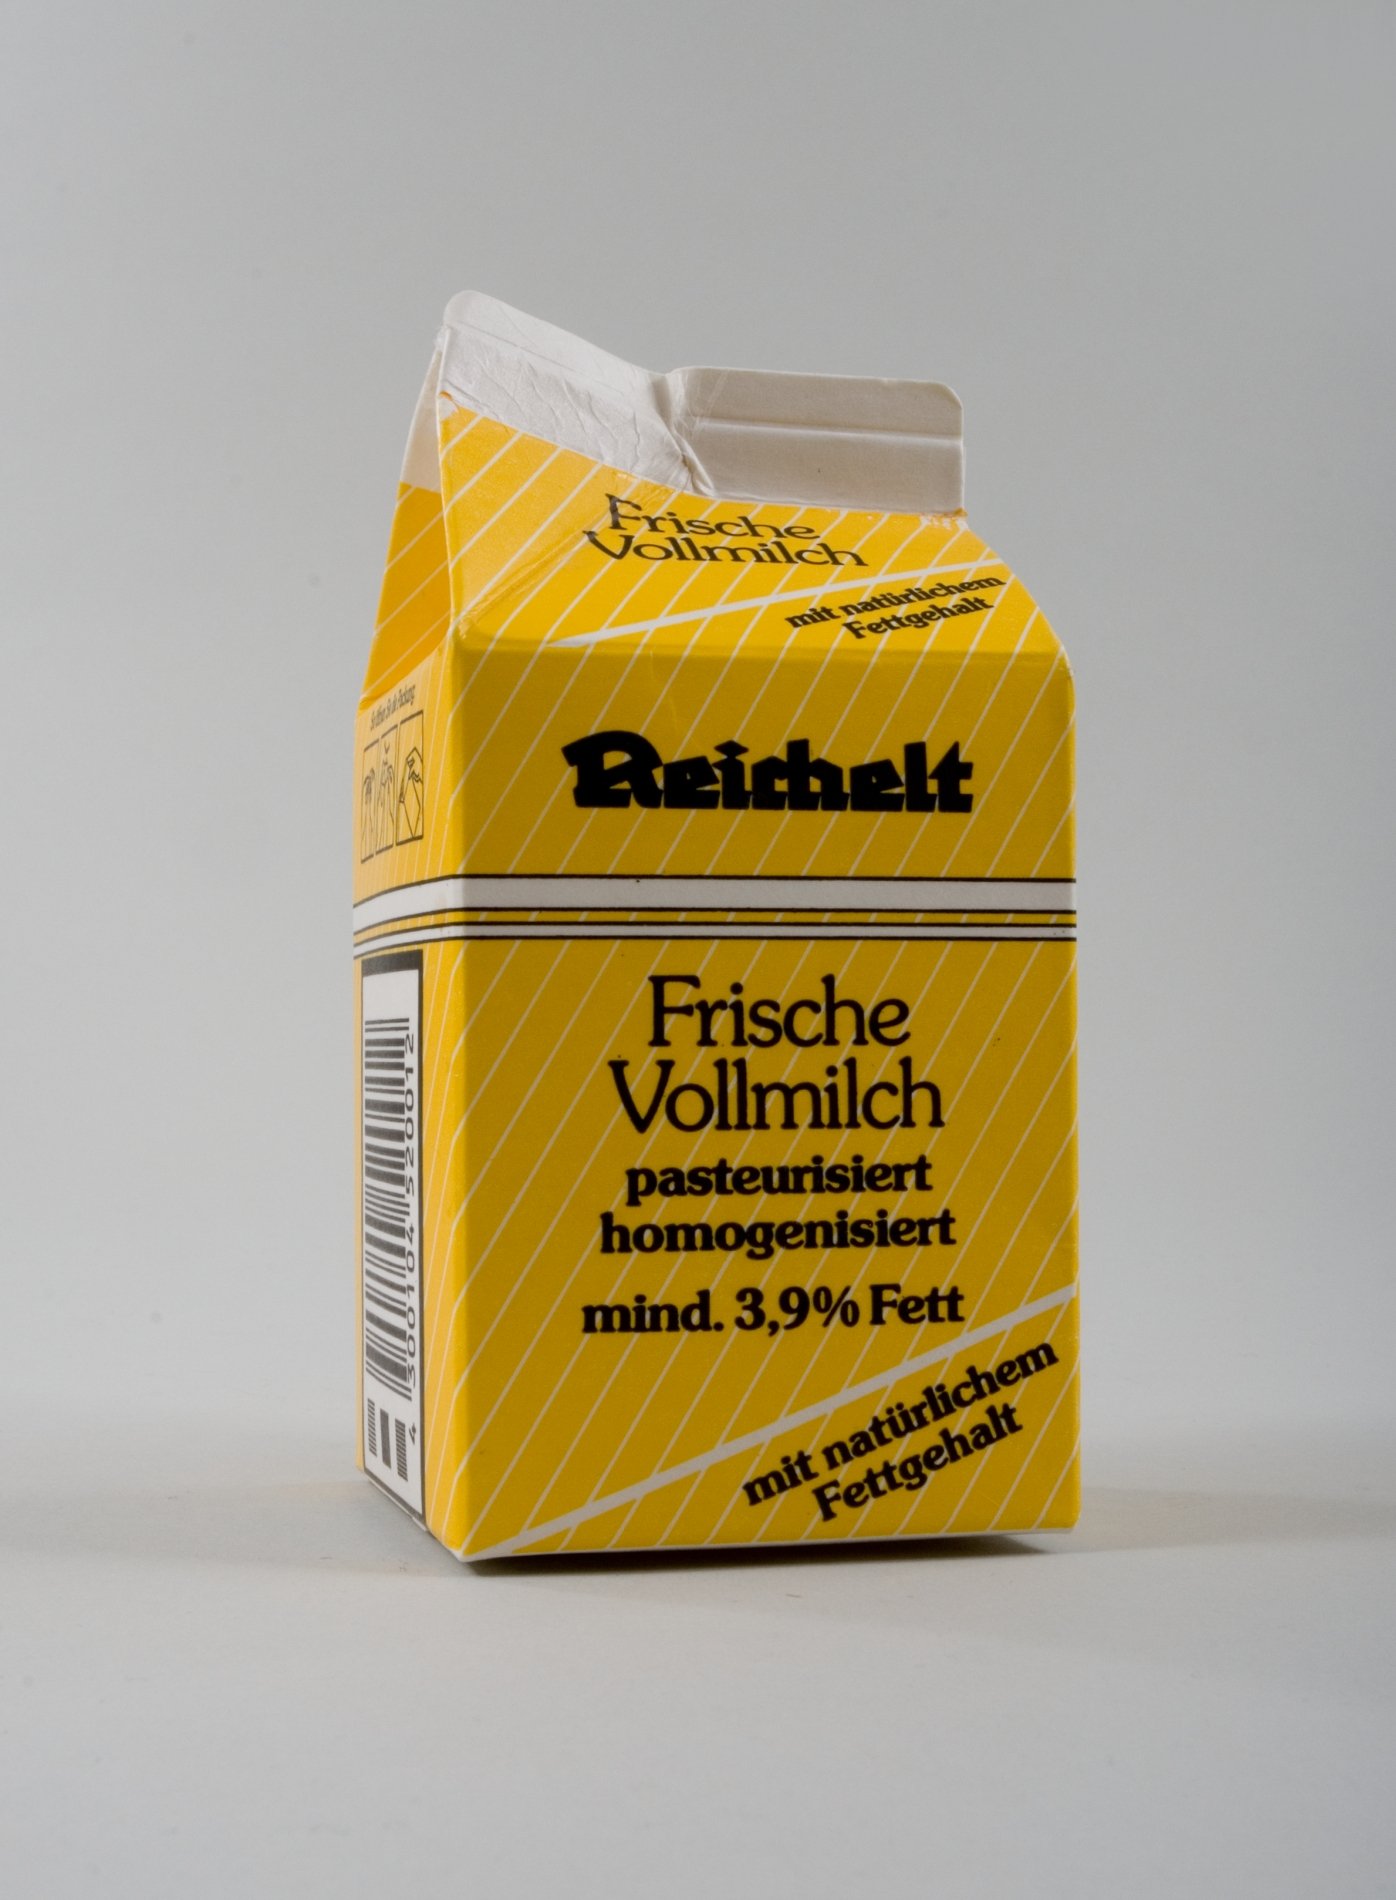 Verpackung "Frische Vollmilch" der Firma "Reichelt" (Stiftung Domäne Dahlem - Landgut und Museum, Weiternutzung nur mit Genehmigung des Museums CC BY-NC-SA)